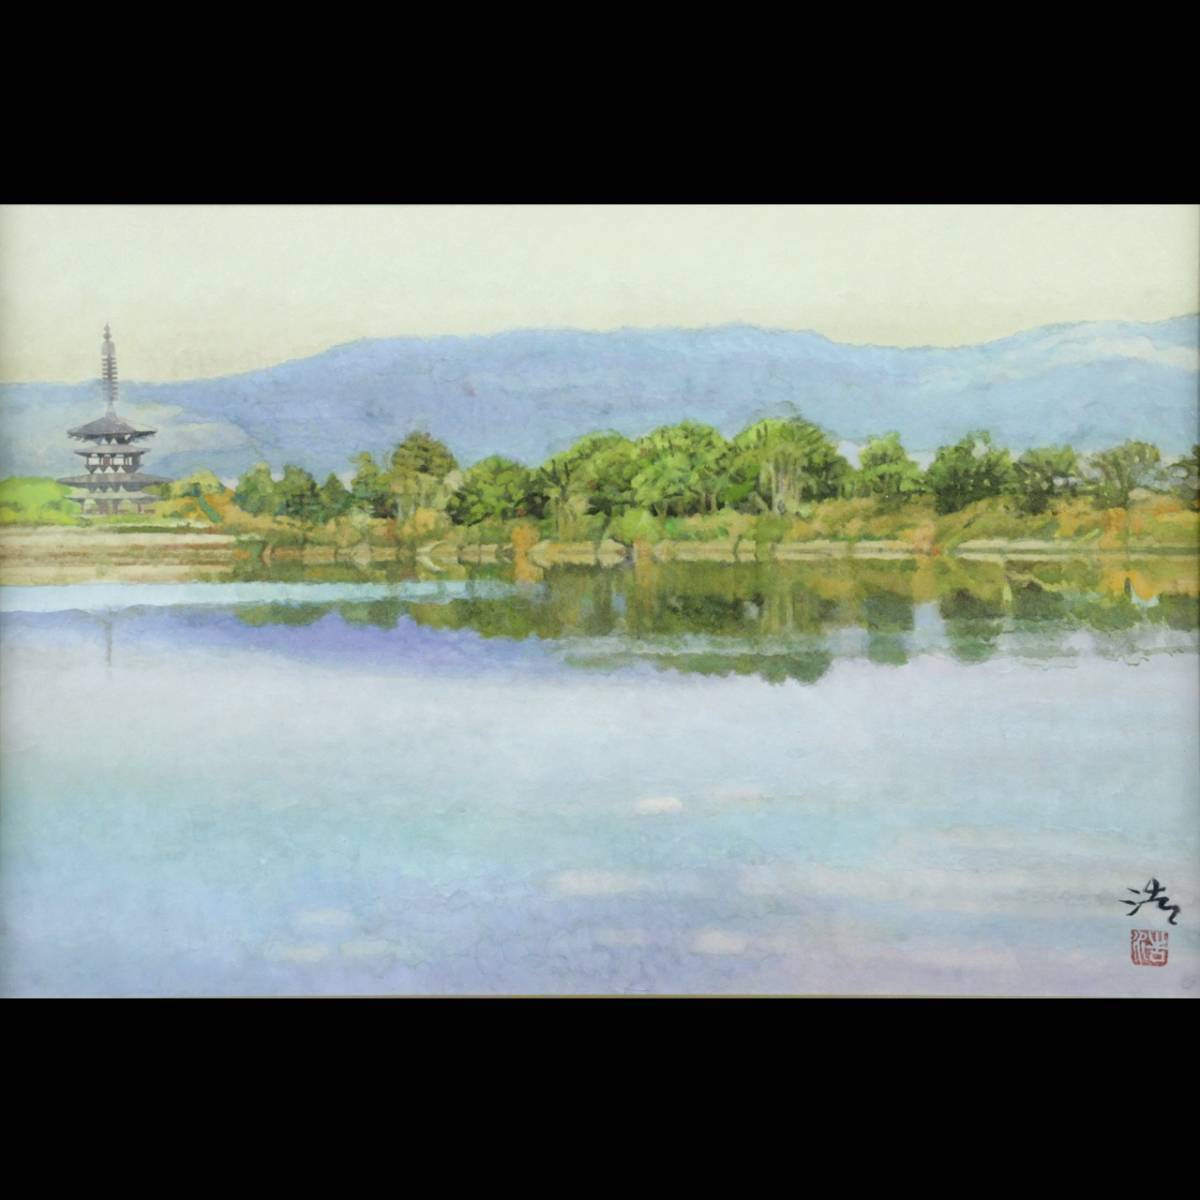 ｡◆ ◆ Genuino Hiroshi Tadokoro garantizado Vista lejana del templo Yakushiji Pintura japonesa pintada a mano No. 6 con pegatina y caja de tatuajes T[C76]U/24, 1 vueltas/SI/(140), Cuadro, pintura japonesa, Paisaje, viento y luna